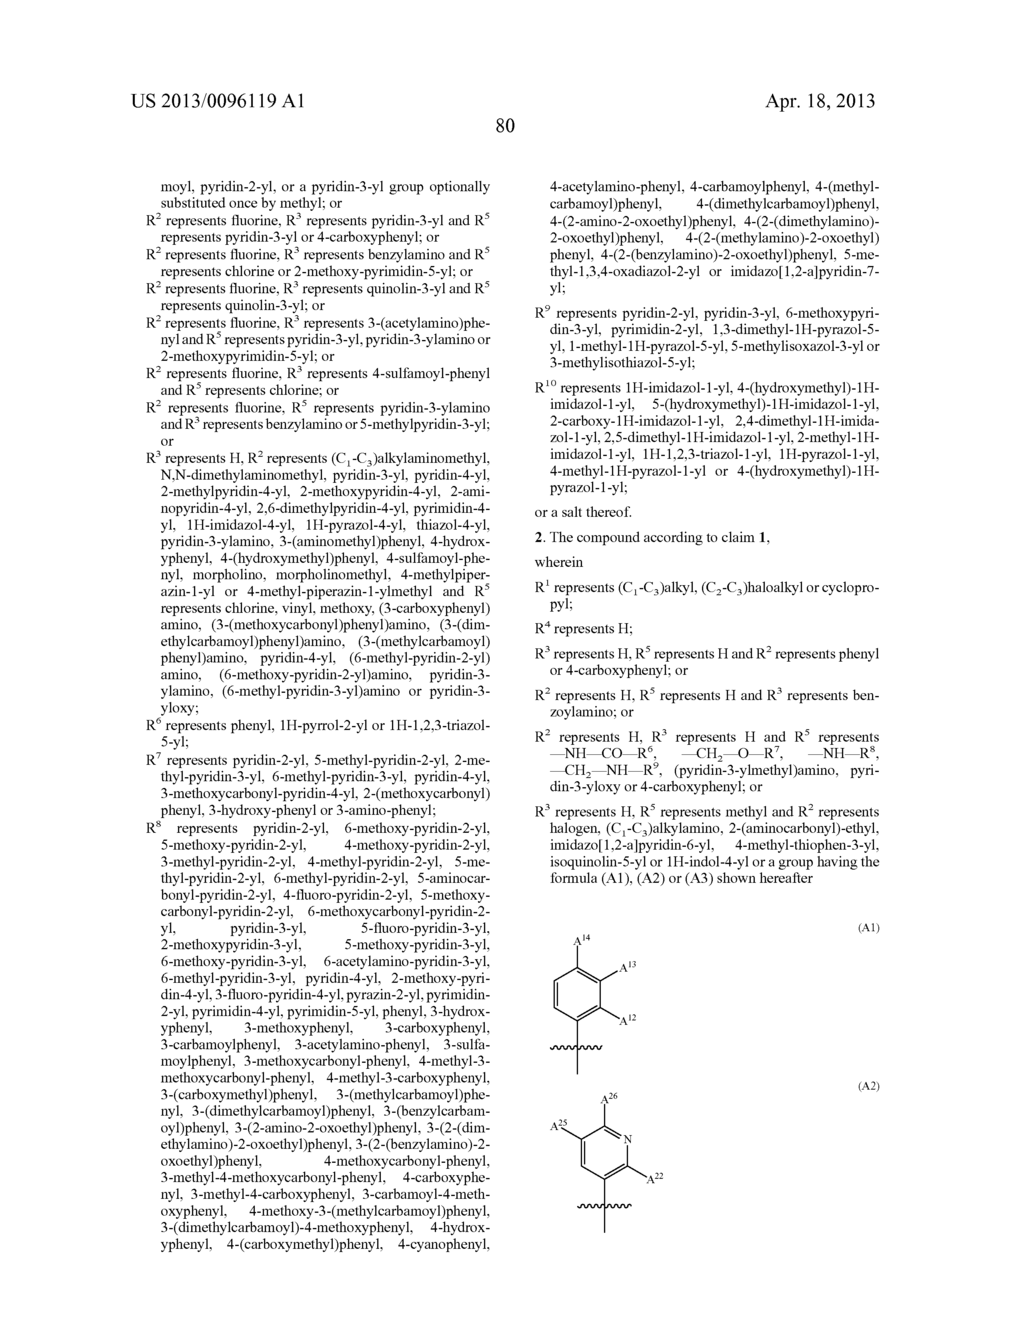 Isoquinolin-3-Ylurea Derivatives - diagram, schematic, and image 81